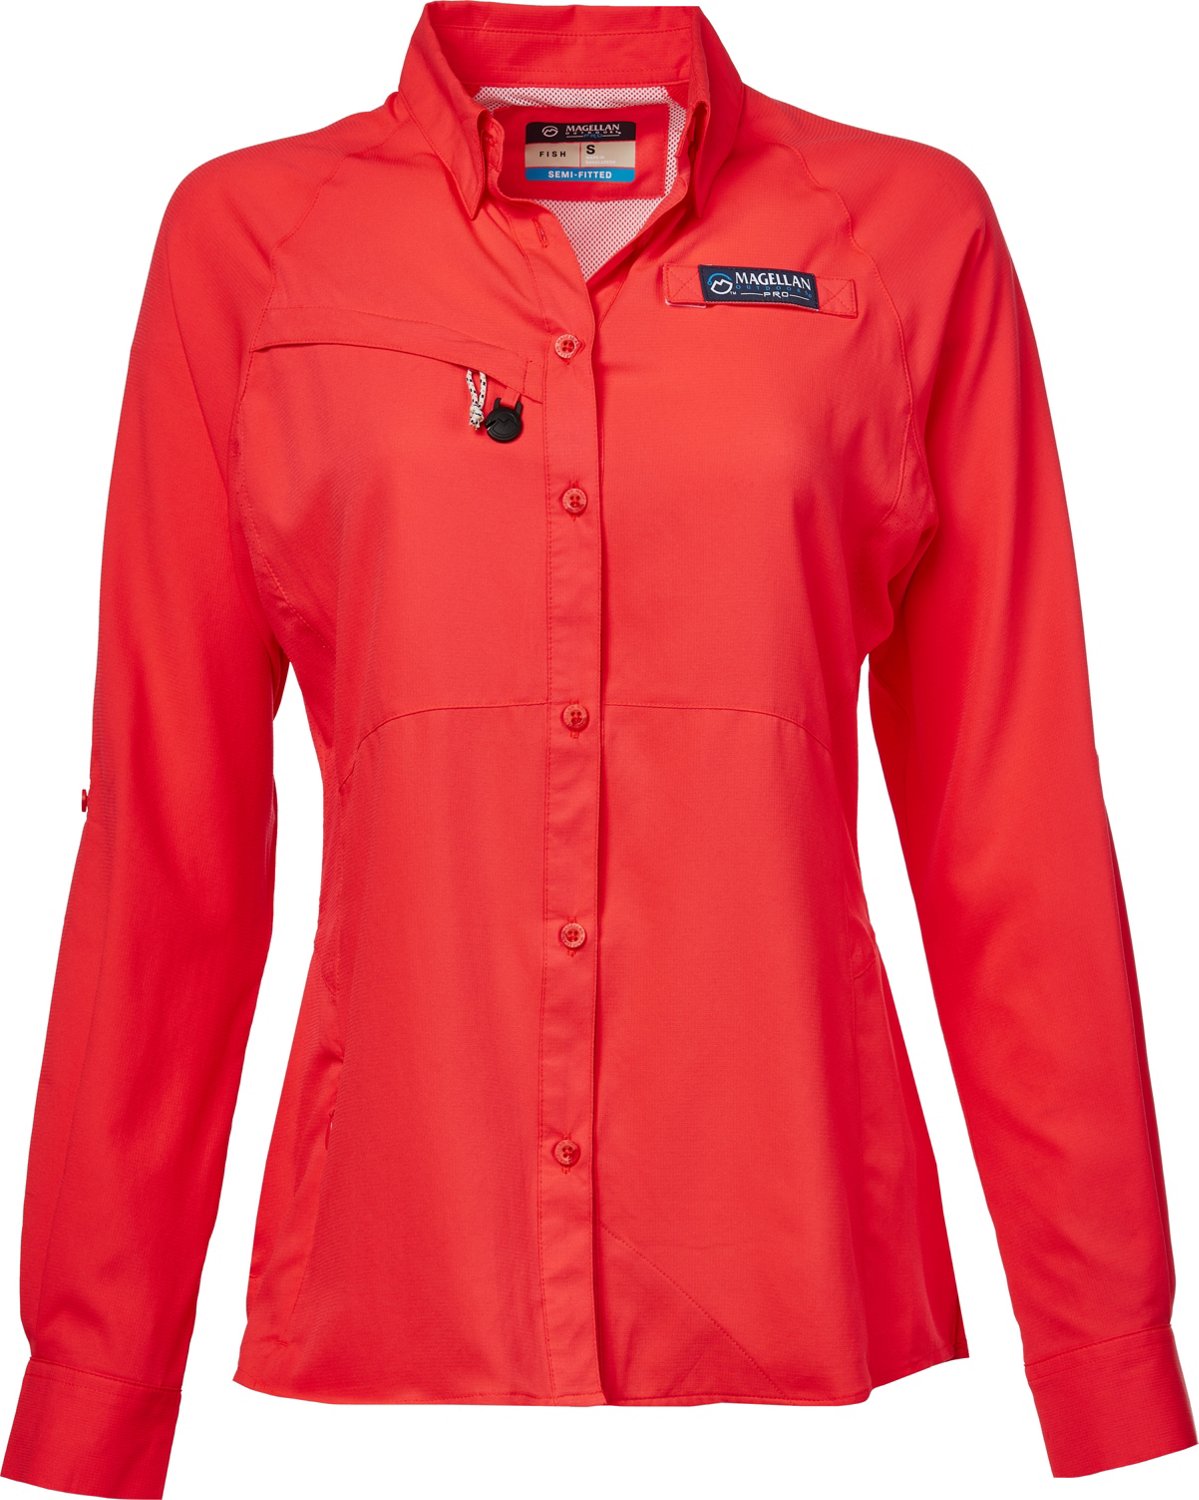 Magellan Outdoors Women's Shirt Laguna Madre Fish Gear, Button-Up